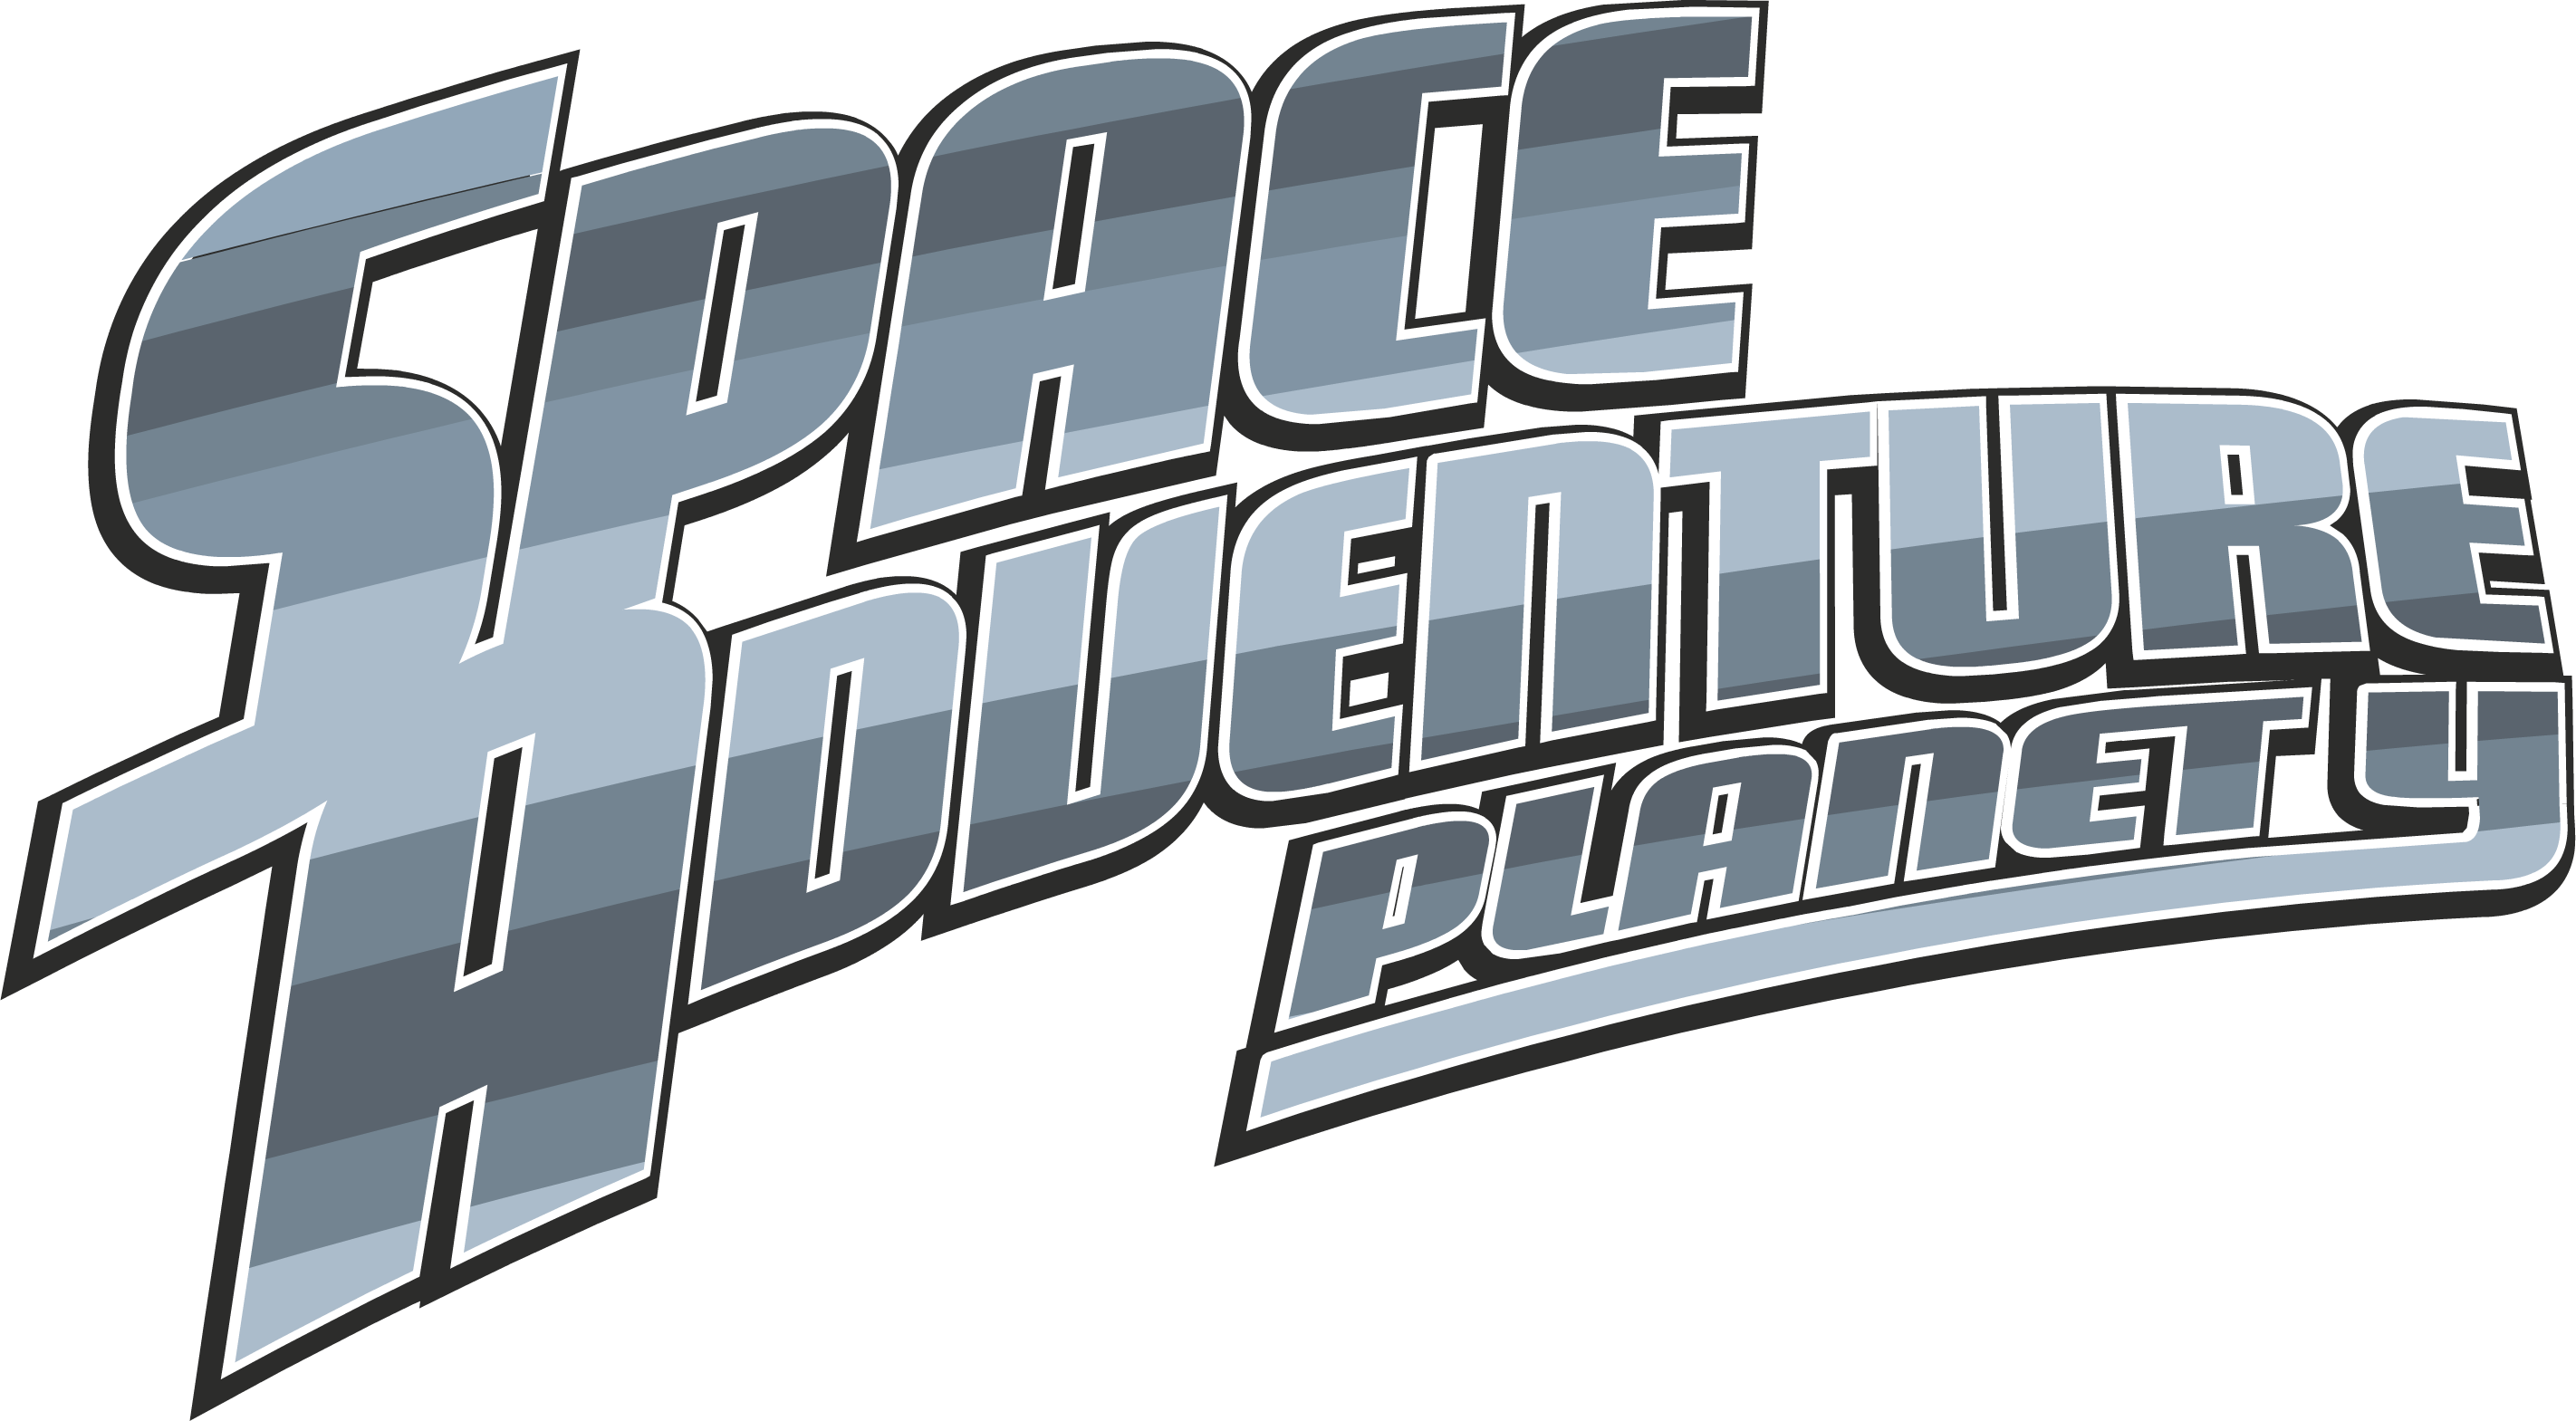 Space Adventure Planet Y | Club Penguin Wiki | Fandom